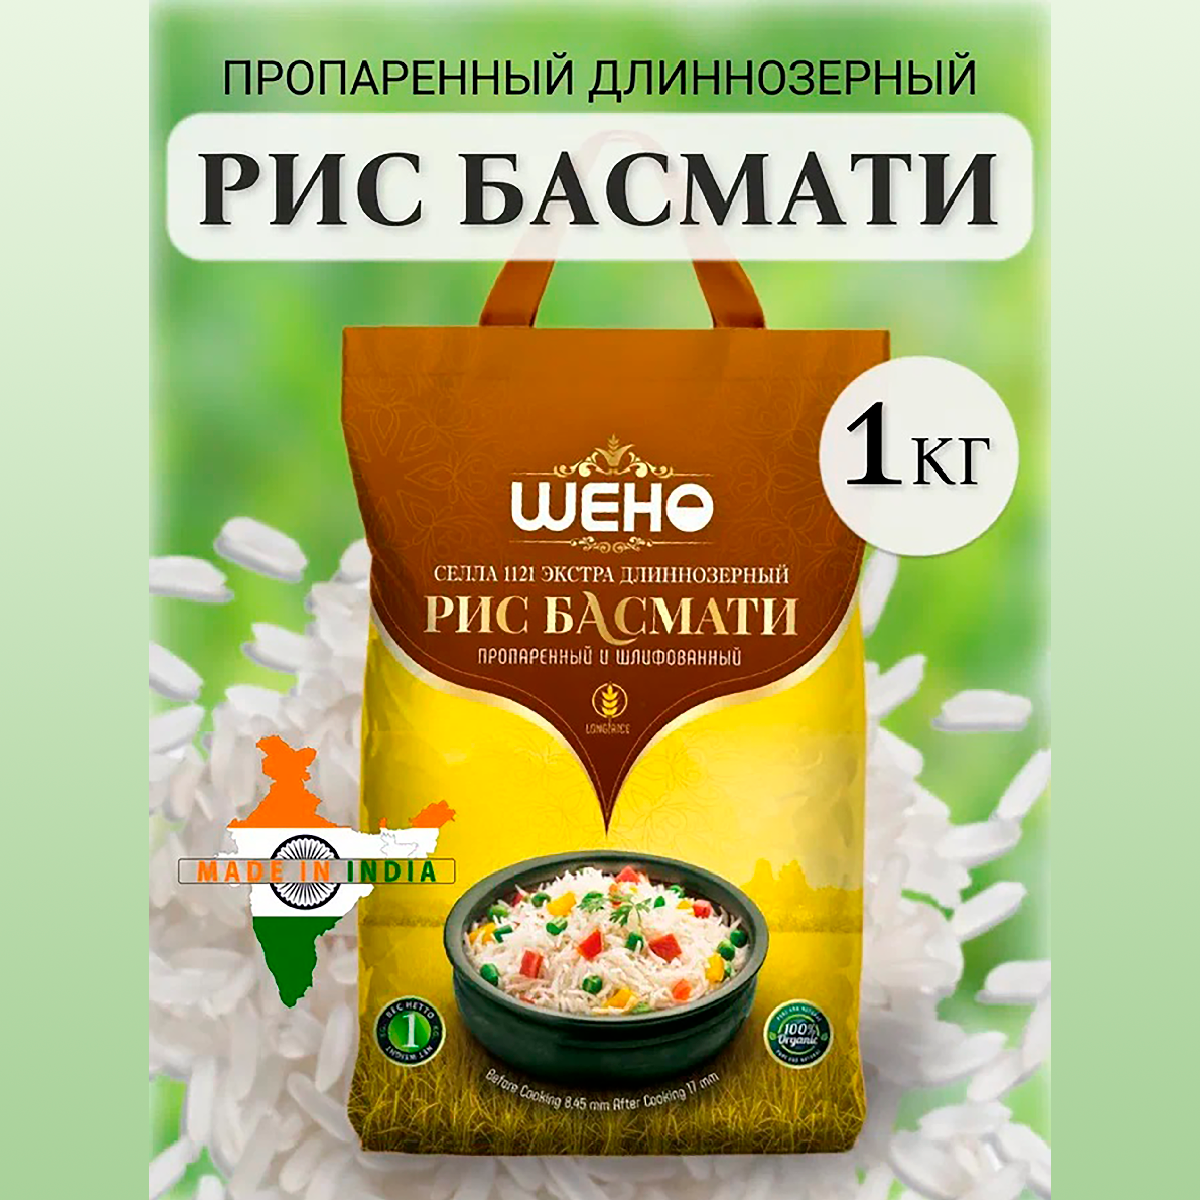 Рис белый, Басмати Экстра 1 кг, длиннозерный/ шено